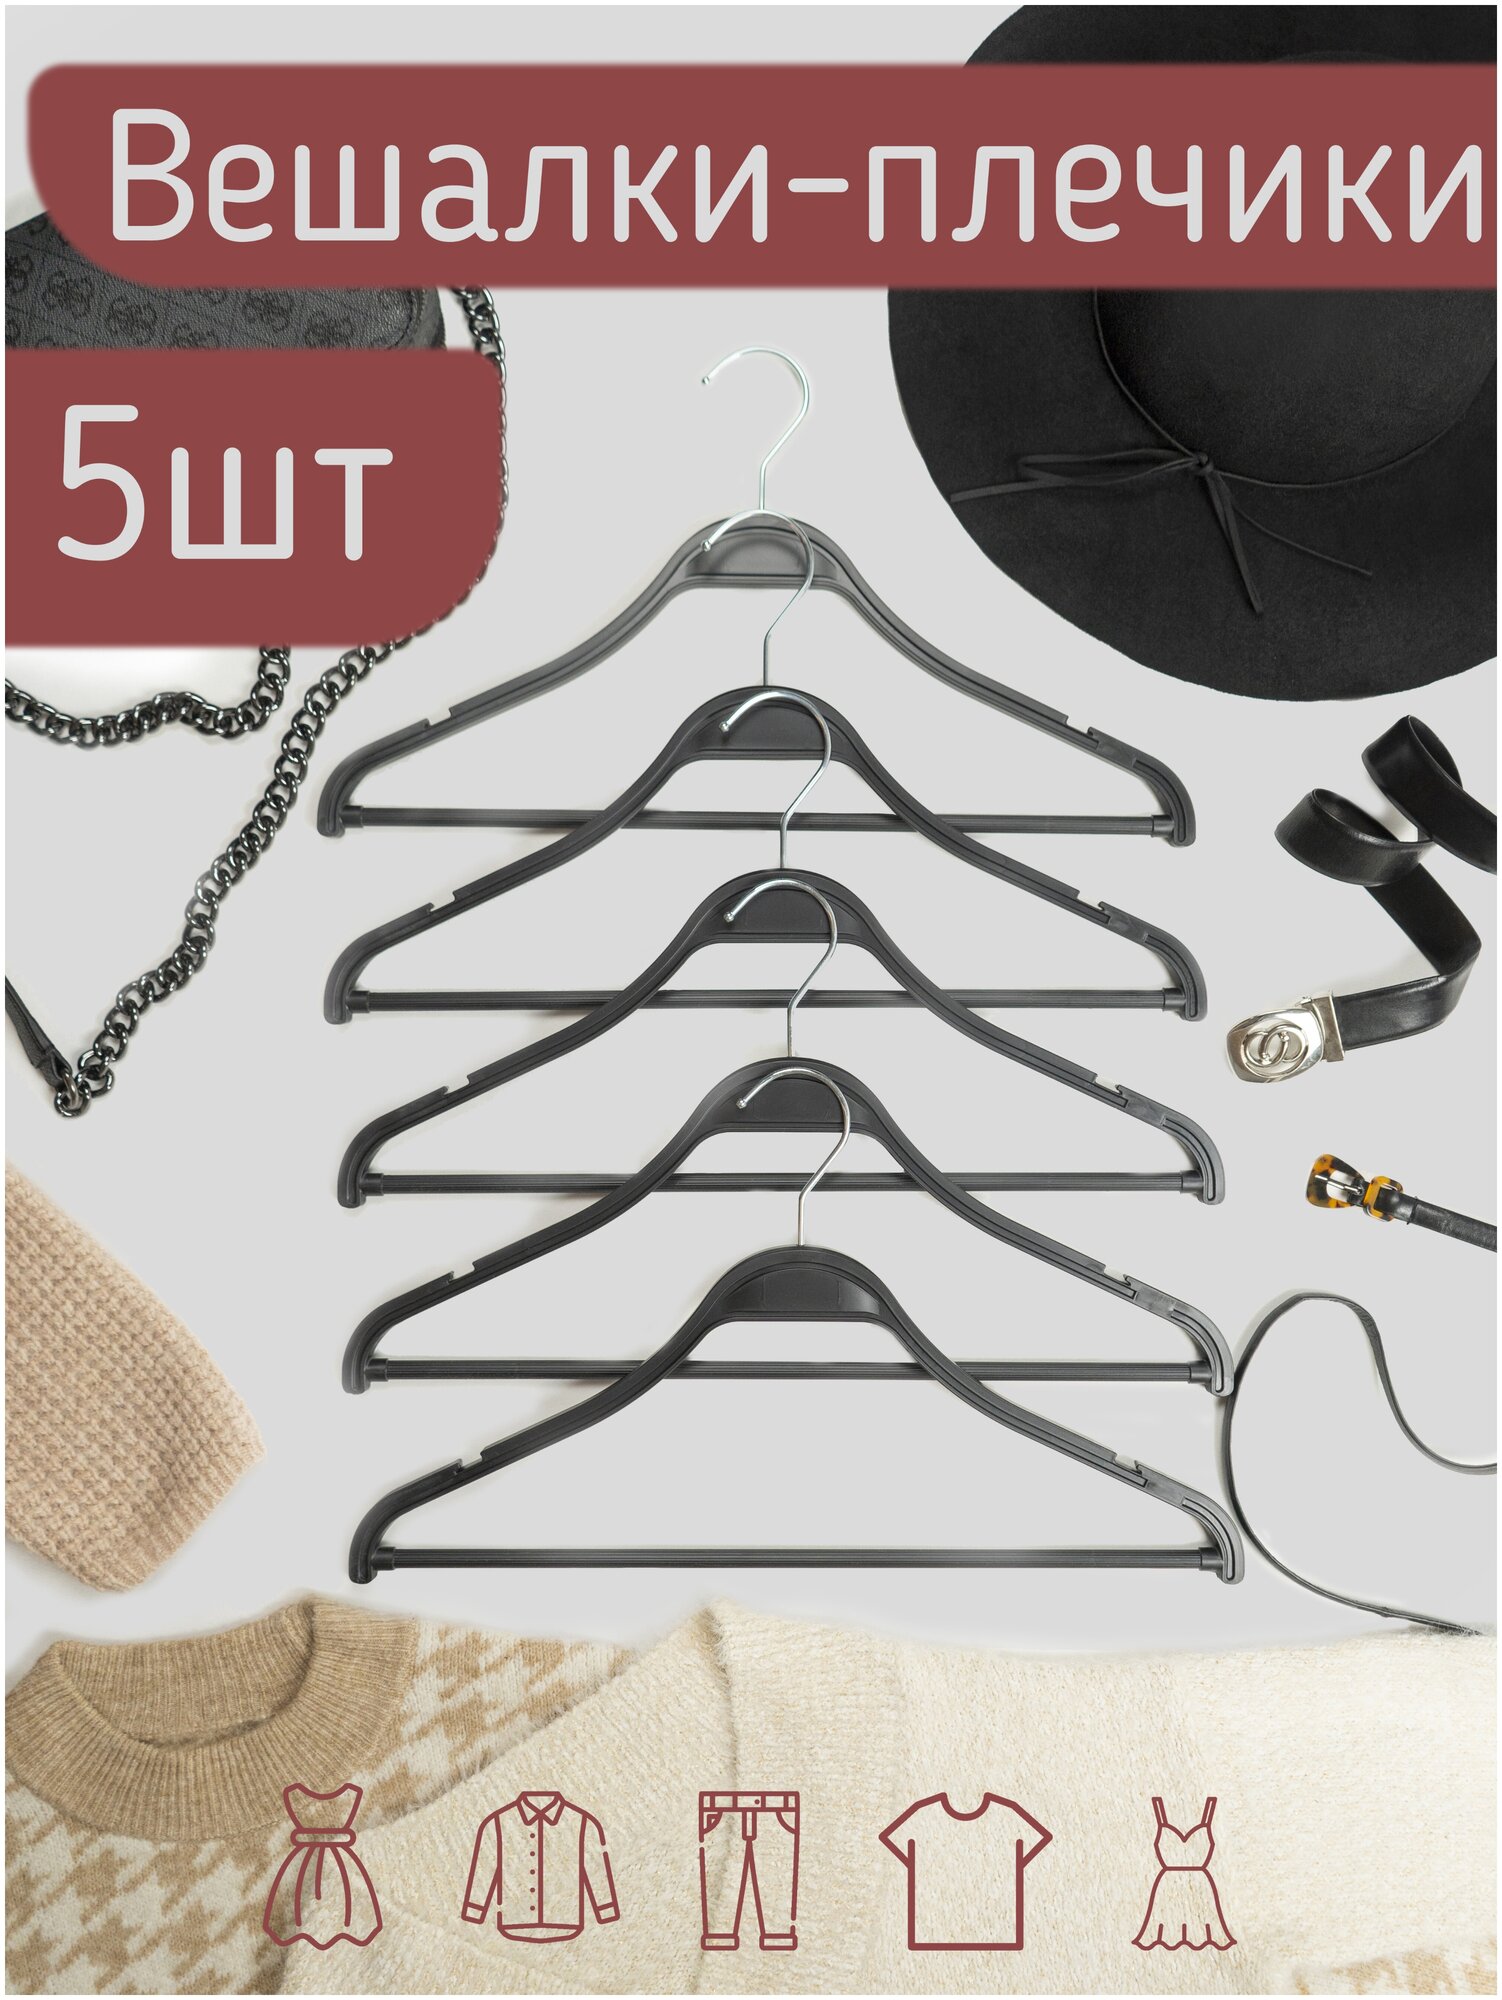 Вешалки-плечики для одежды пластик под дерево с перекладиной, цвет черный, 41 см, комплект 5 штук